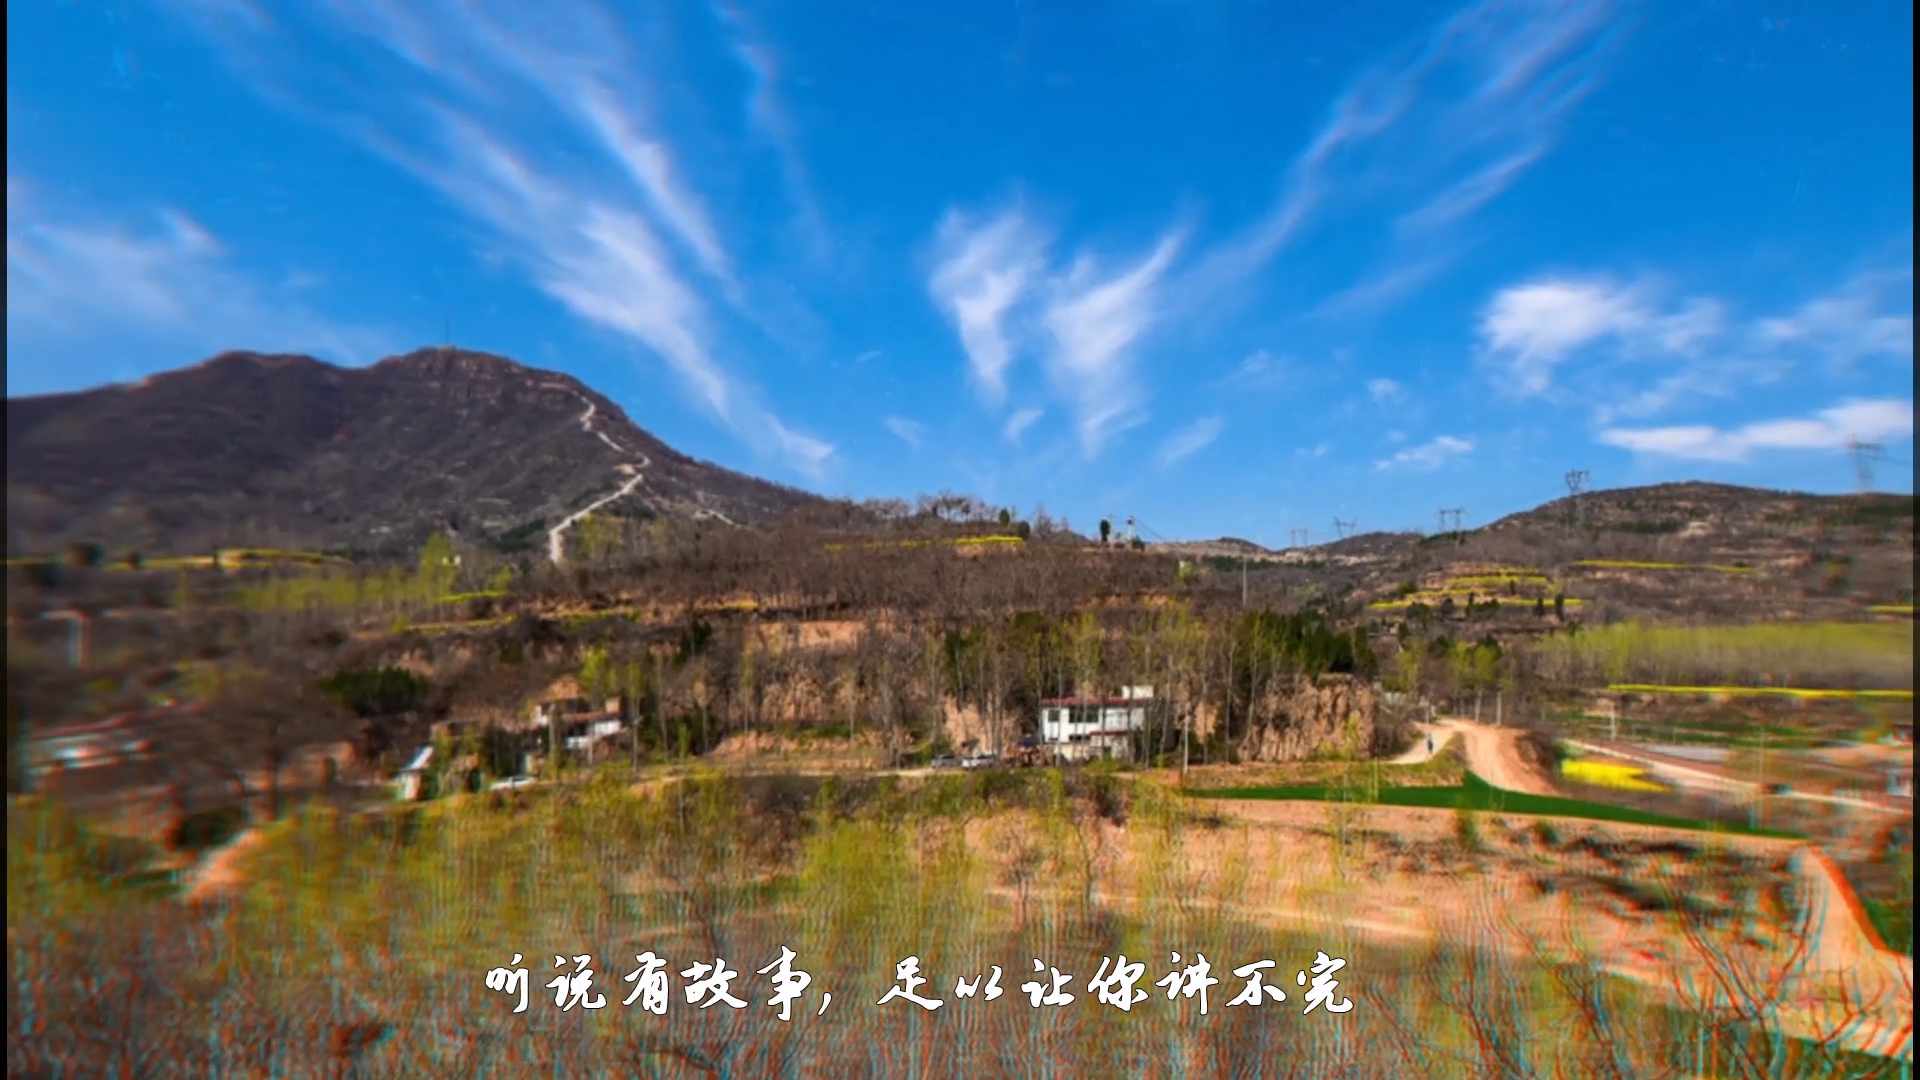 牧客影视承制的中原佛山旅游风光宣传片交片